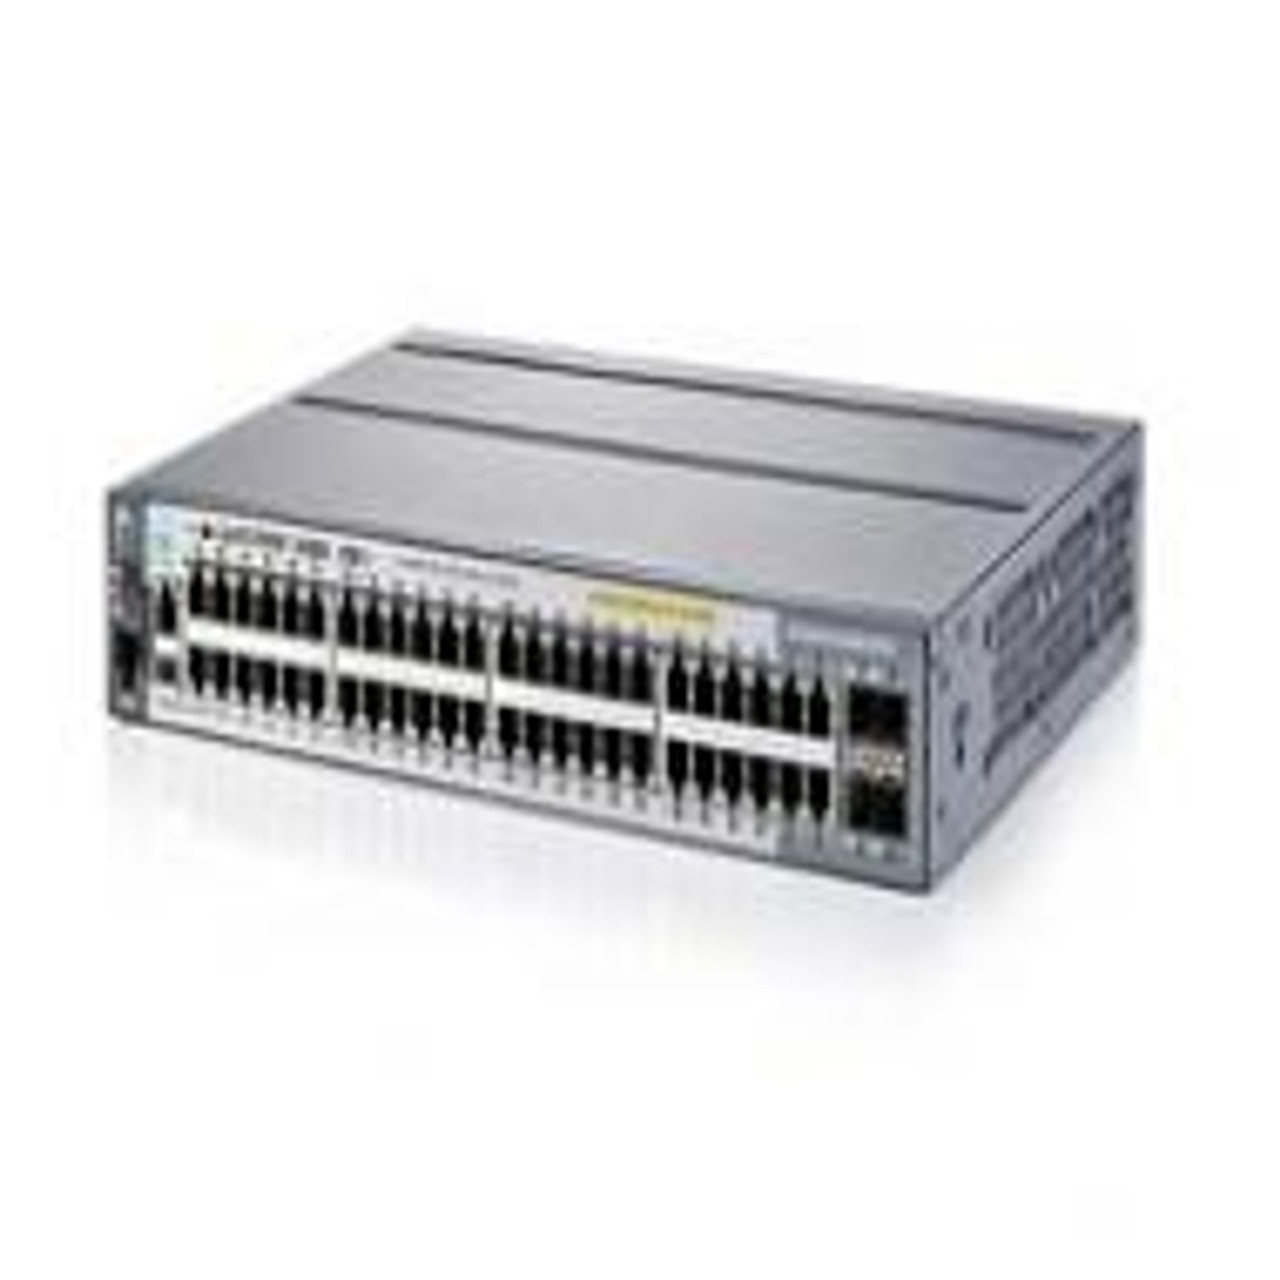 J9729-61001 | Hp | Procurve 2920-48G 48-Ports Poe+ Managed Stackable Gigabit Ethernet Switch